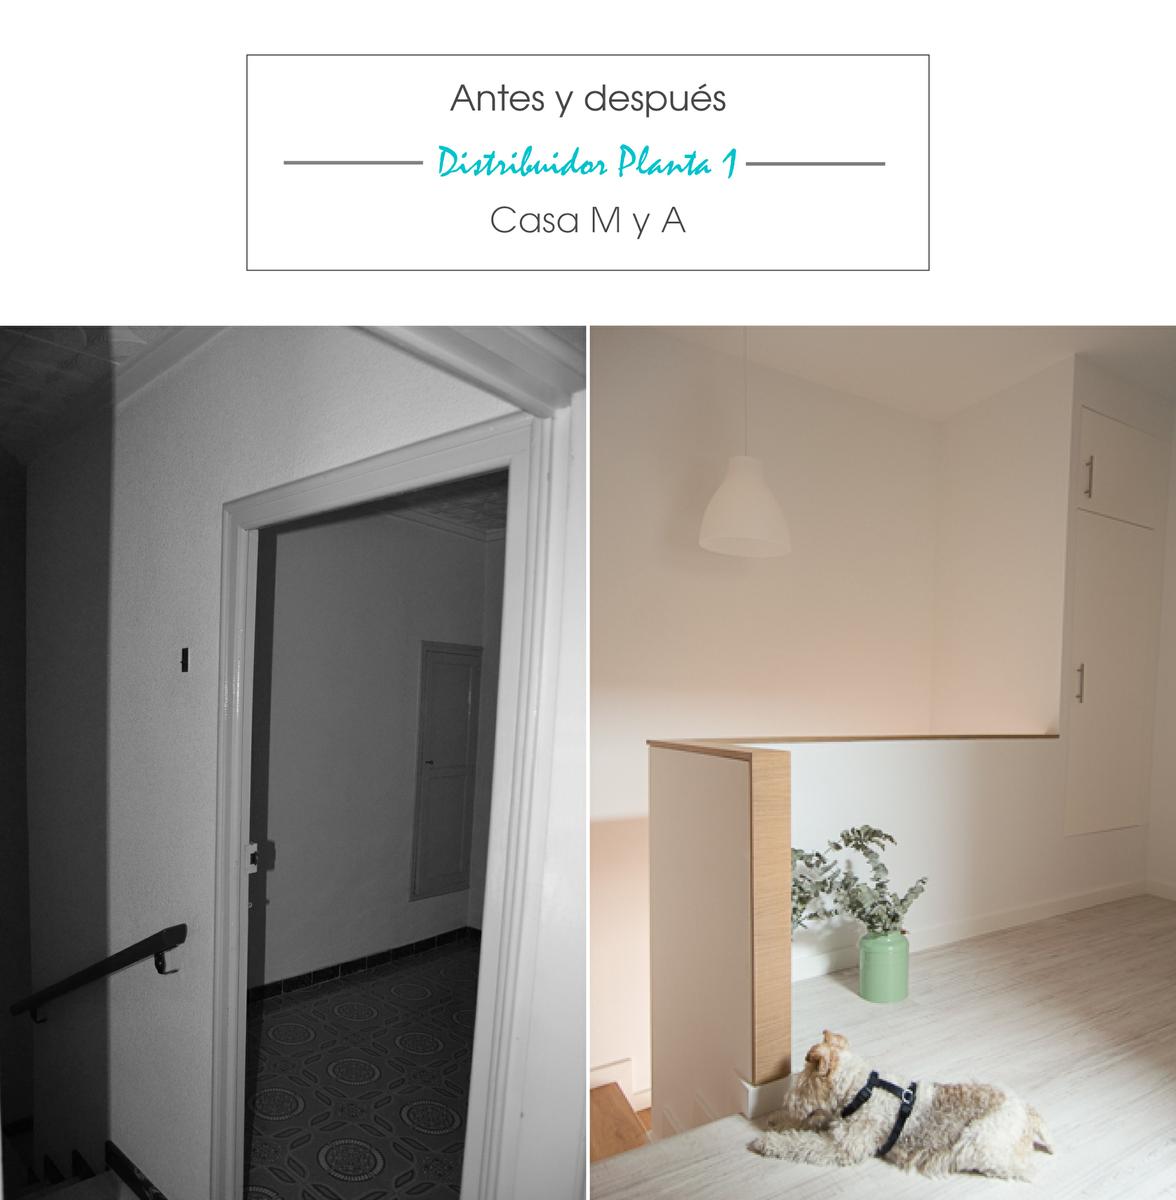 antes y despues_distribuidor_casamya_blog_ana_pla_interiorismo_decoracion_1